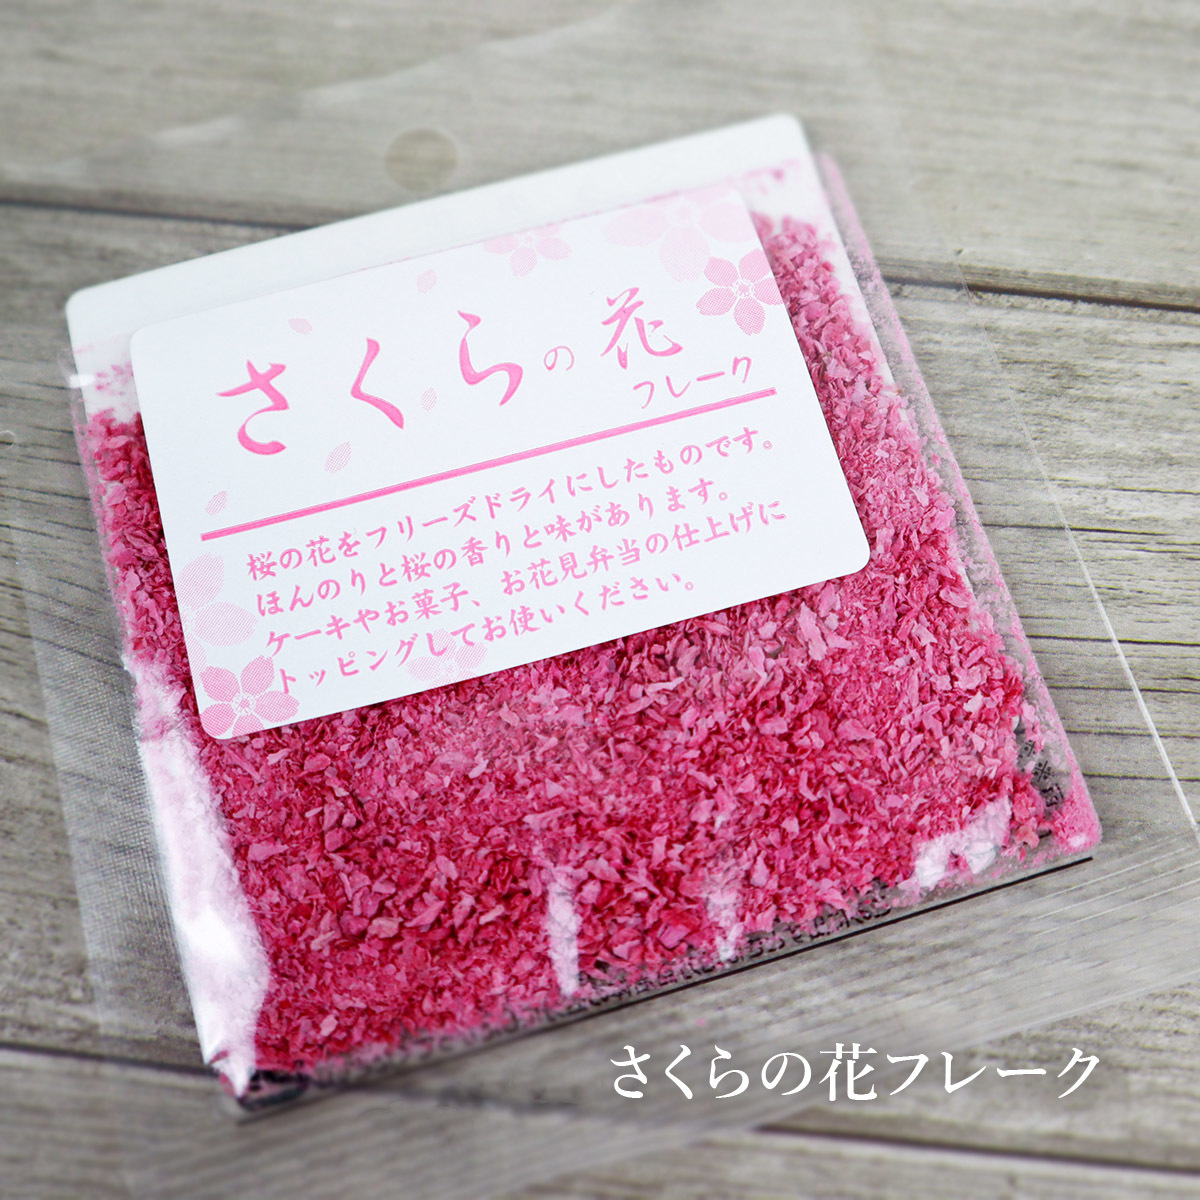 さくらの花フレーク 3g 桜 ピンク お菓子作り お菓子 料理 和菓子 洋菓子_画像1